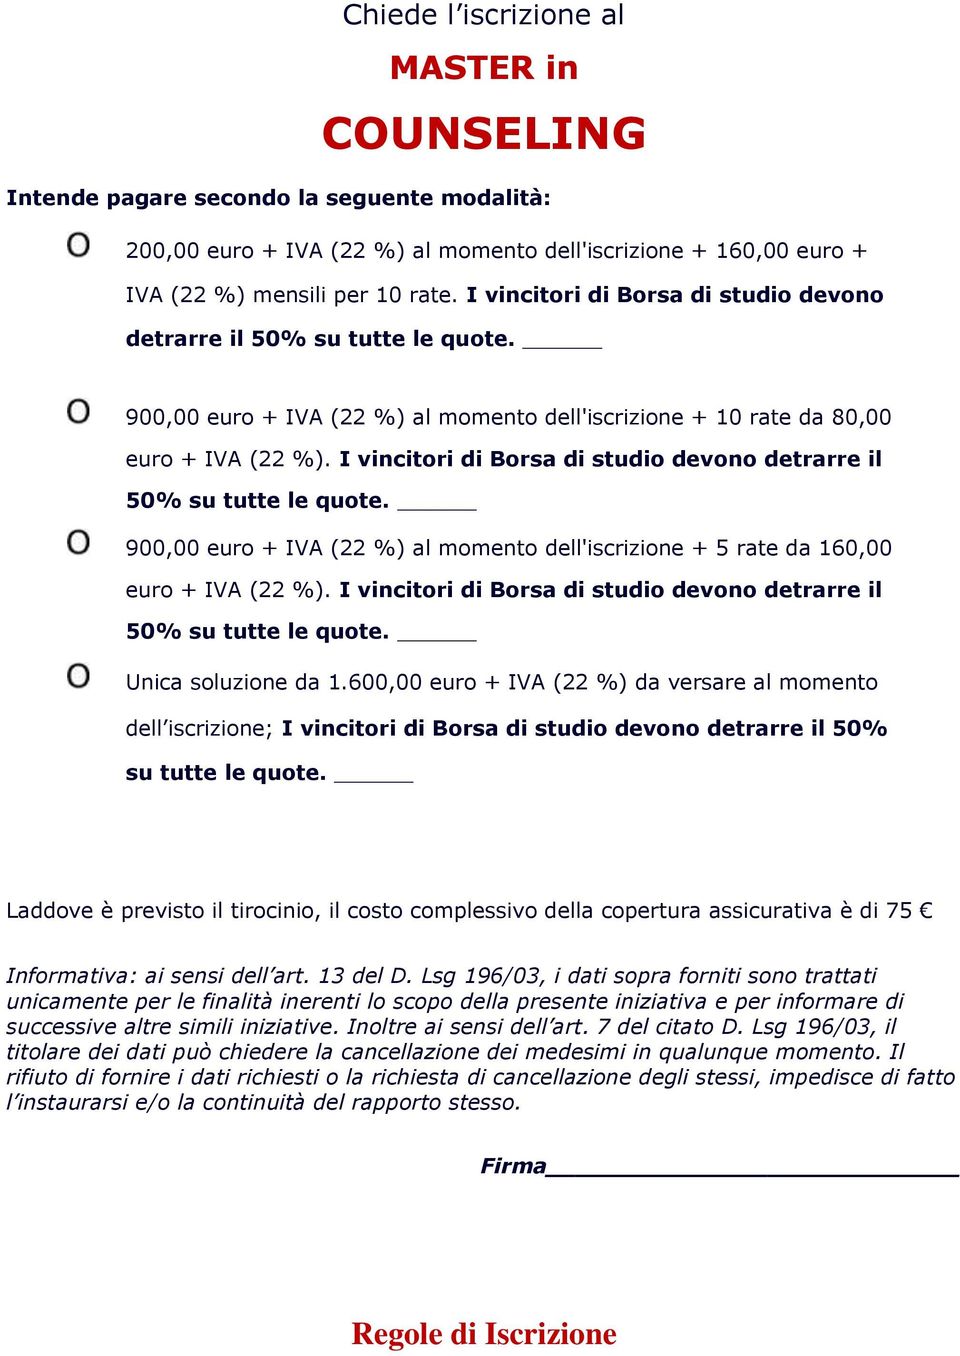 I vincitri di Brsa di studi devn detrarre il 50% su tutte le qute. 900,00 eur + IVA (22 %) al mment dell'iscrizine + 5 rate da 160,00 eur + IVA (22 %).